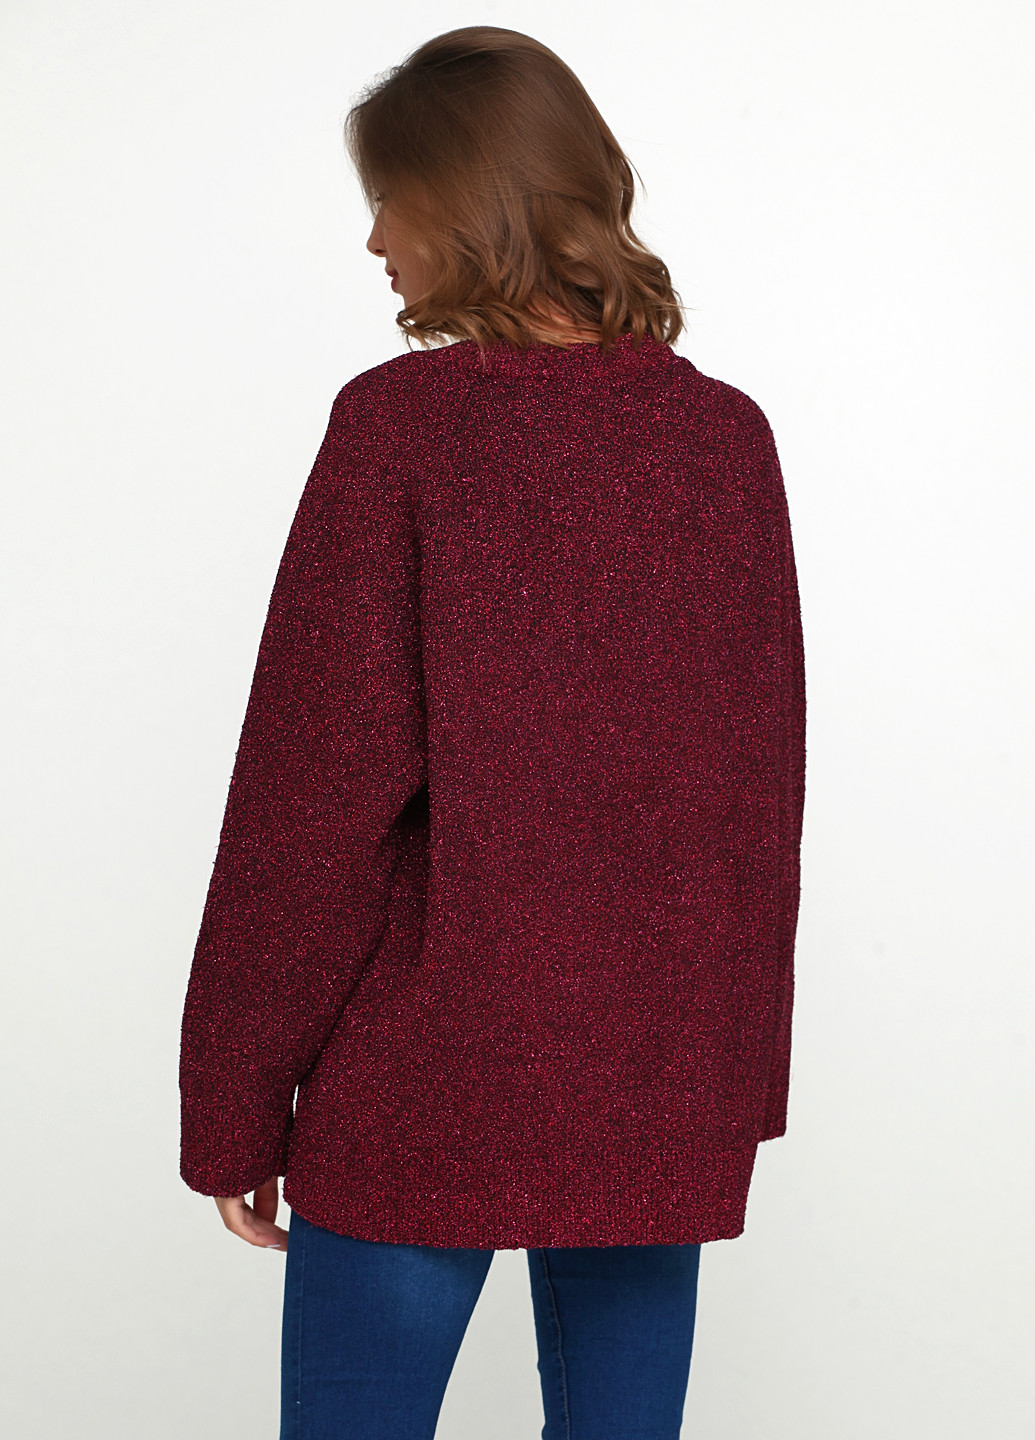 Бордовый демисезонный пуловер пуловер Uterque